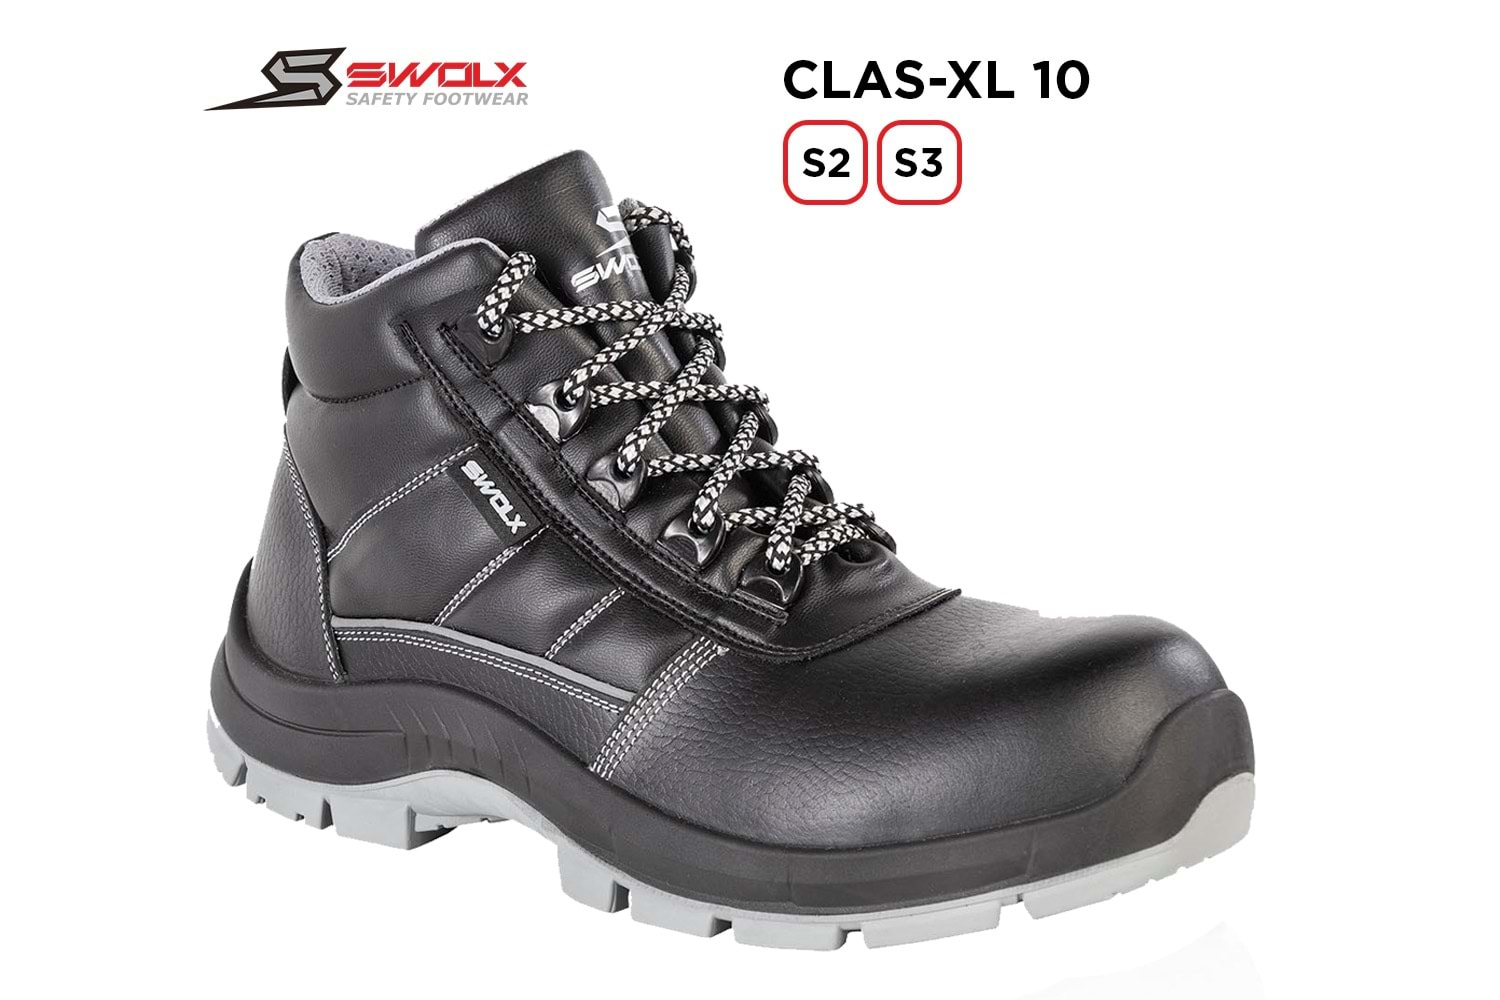 Swolx İş Ayakkabısı - Clas-Xl 10 S2 - 39